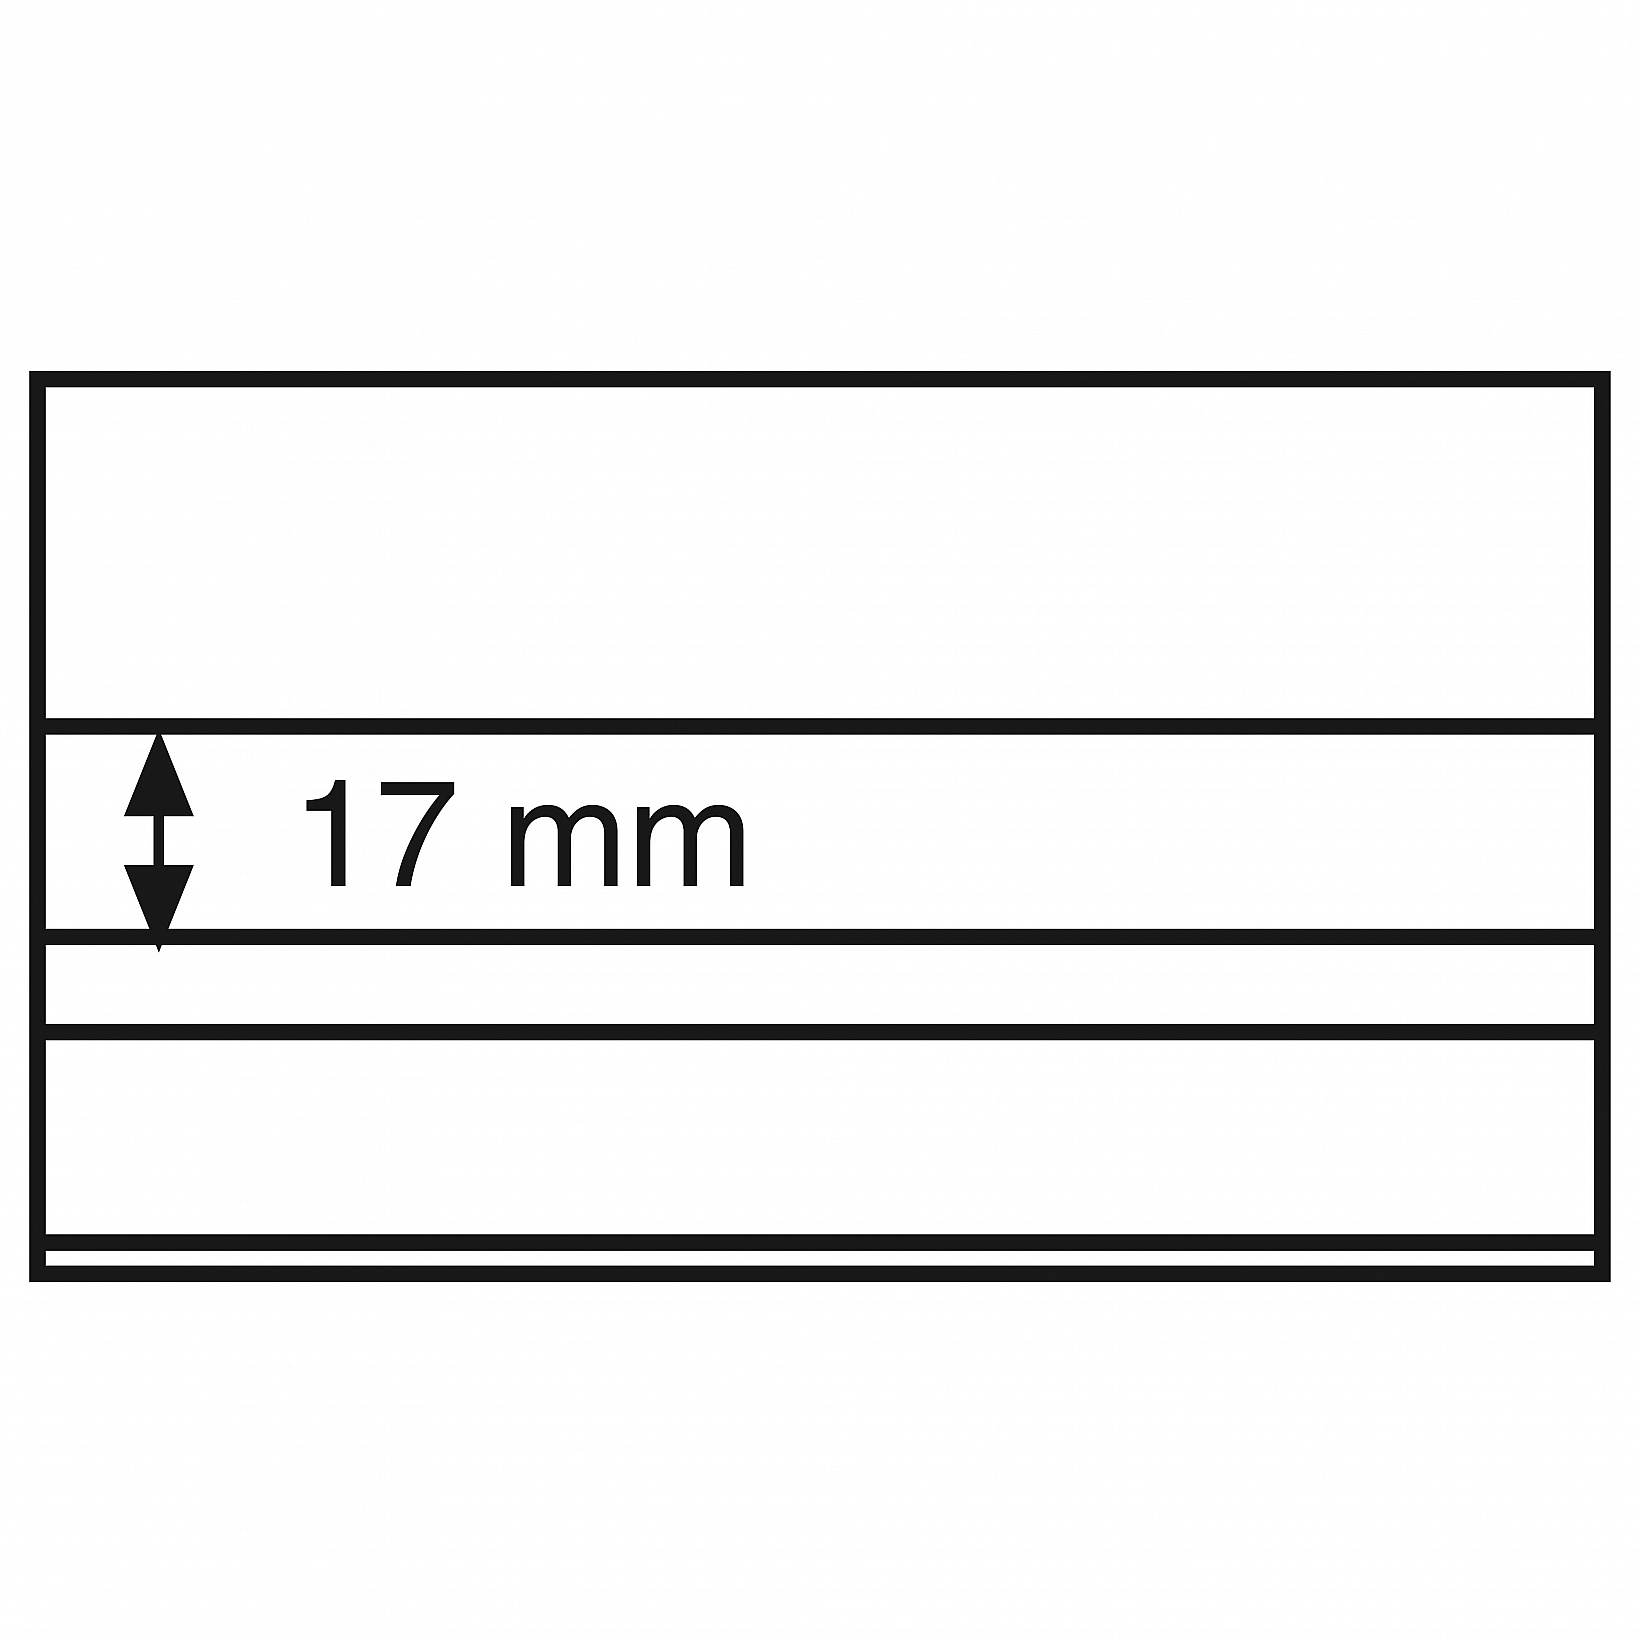 Štandartné PVC karty, 148x85 mm, 2 číre pásy s krycím listom, čierne, 100ks/bal (EKACD/2SPVC)